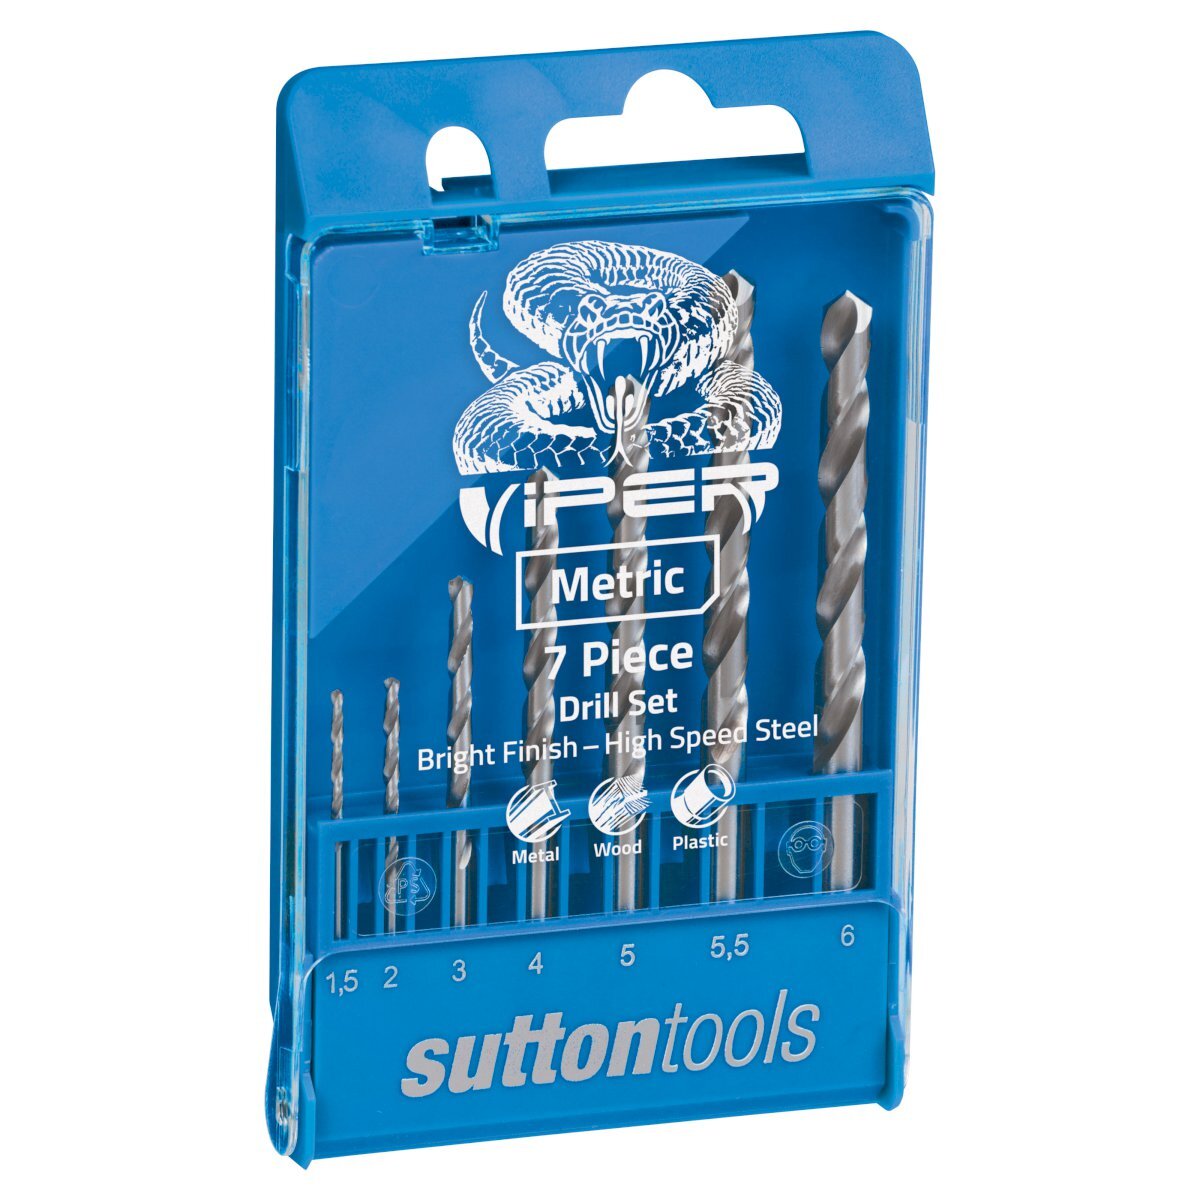 Sutton Tools Viper Jobber Drill Bit Set Metric - 7 Piece Metal Wood & Plastic